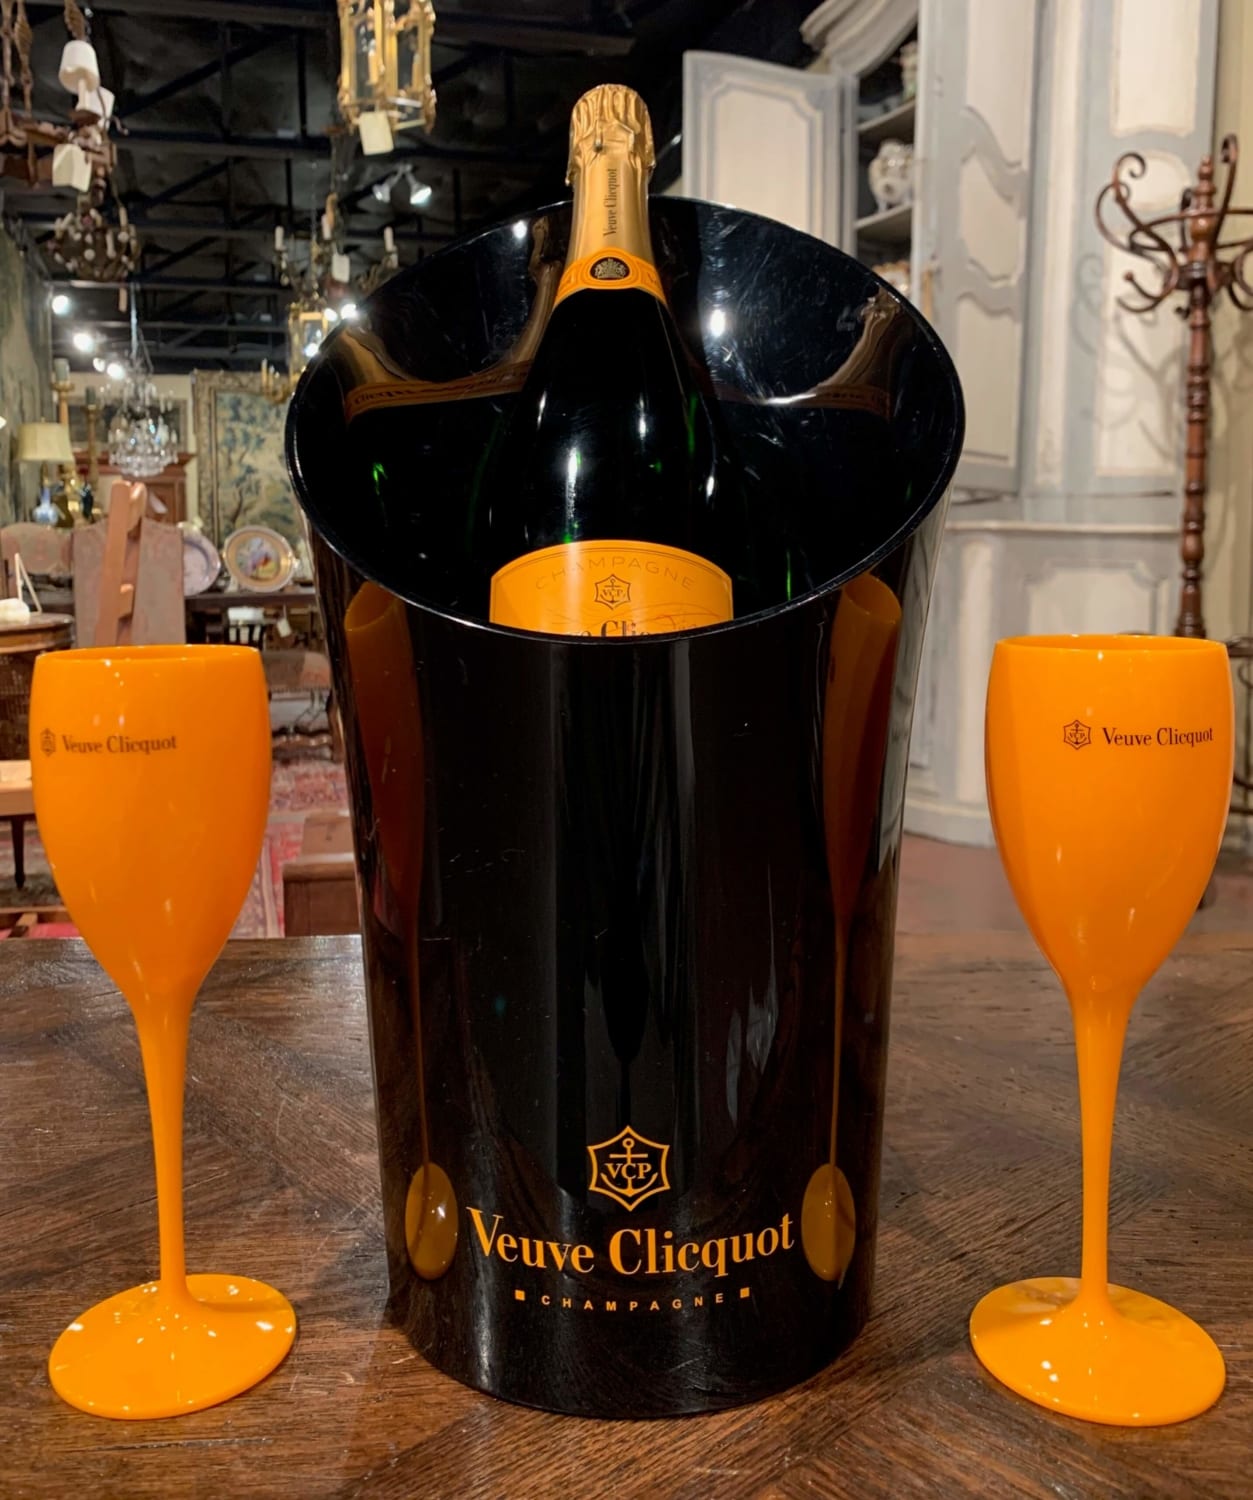 Veuve Clicquot Champagne ORANGE STEM GLASSES Flute X 2 New 